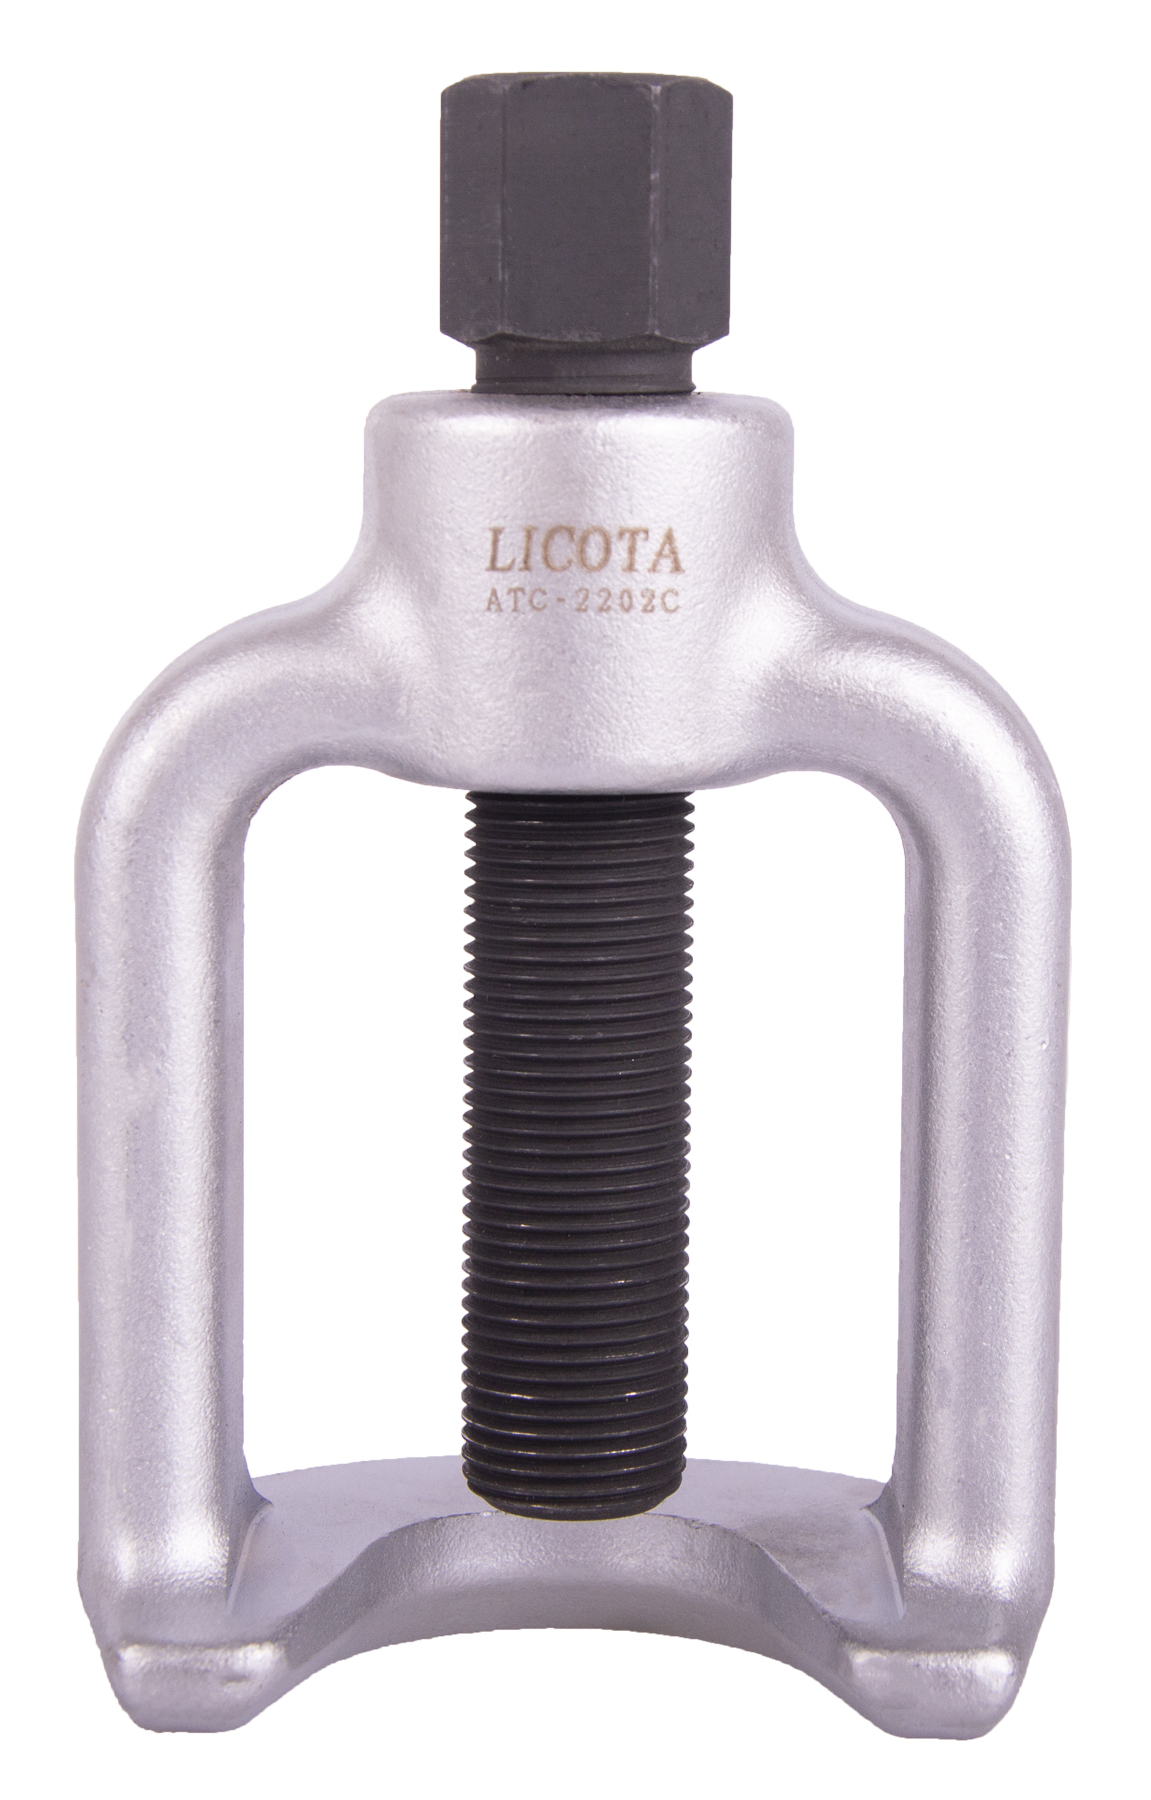 Stahovák kulového čepu - 40 mm - LIATC2202C (3034)